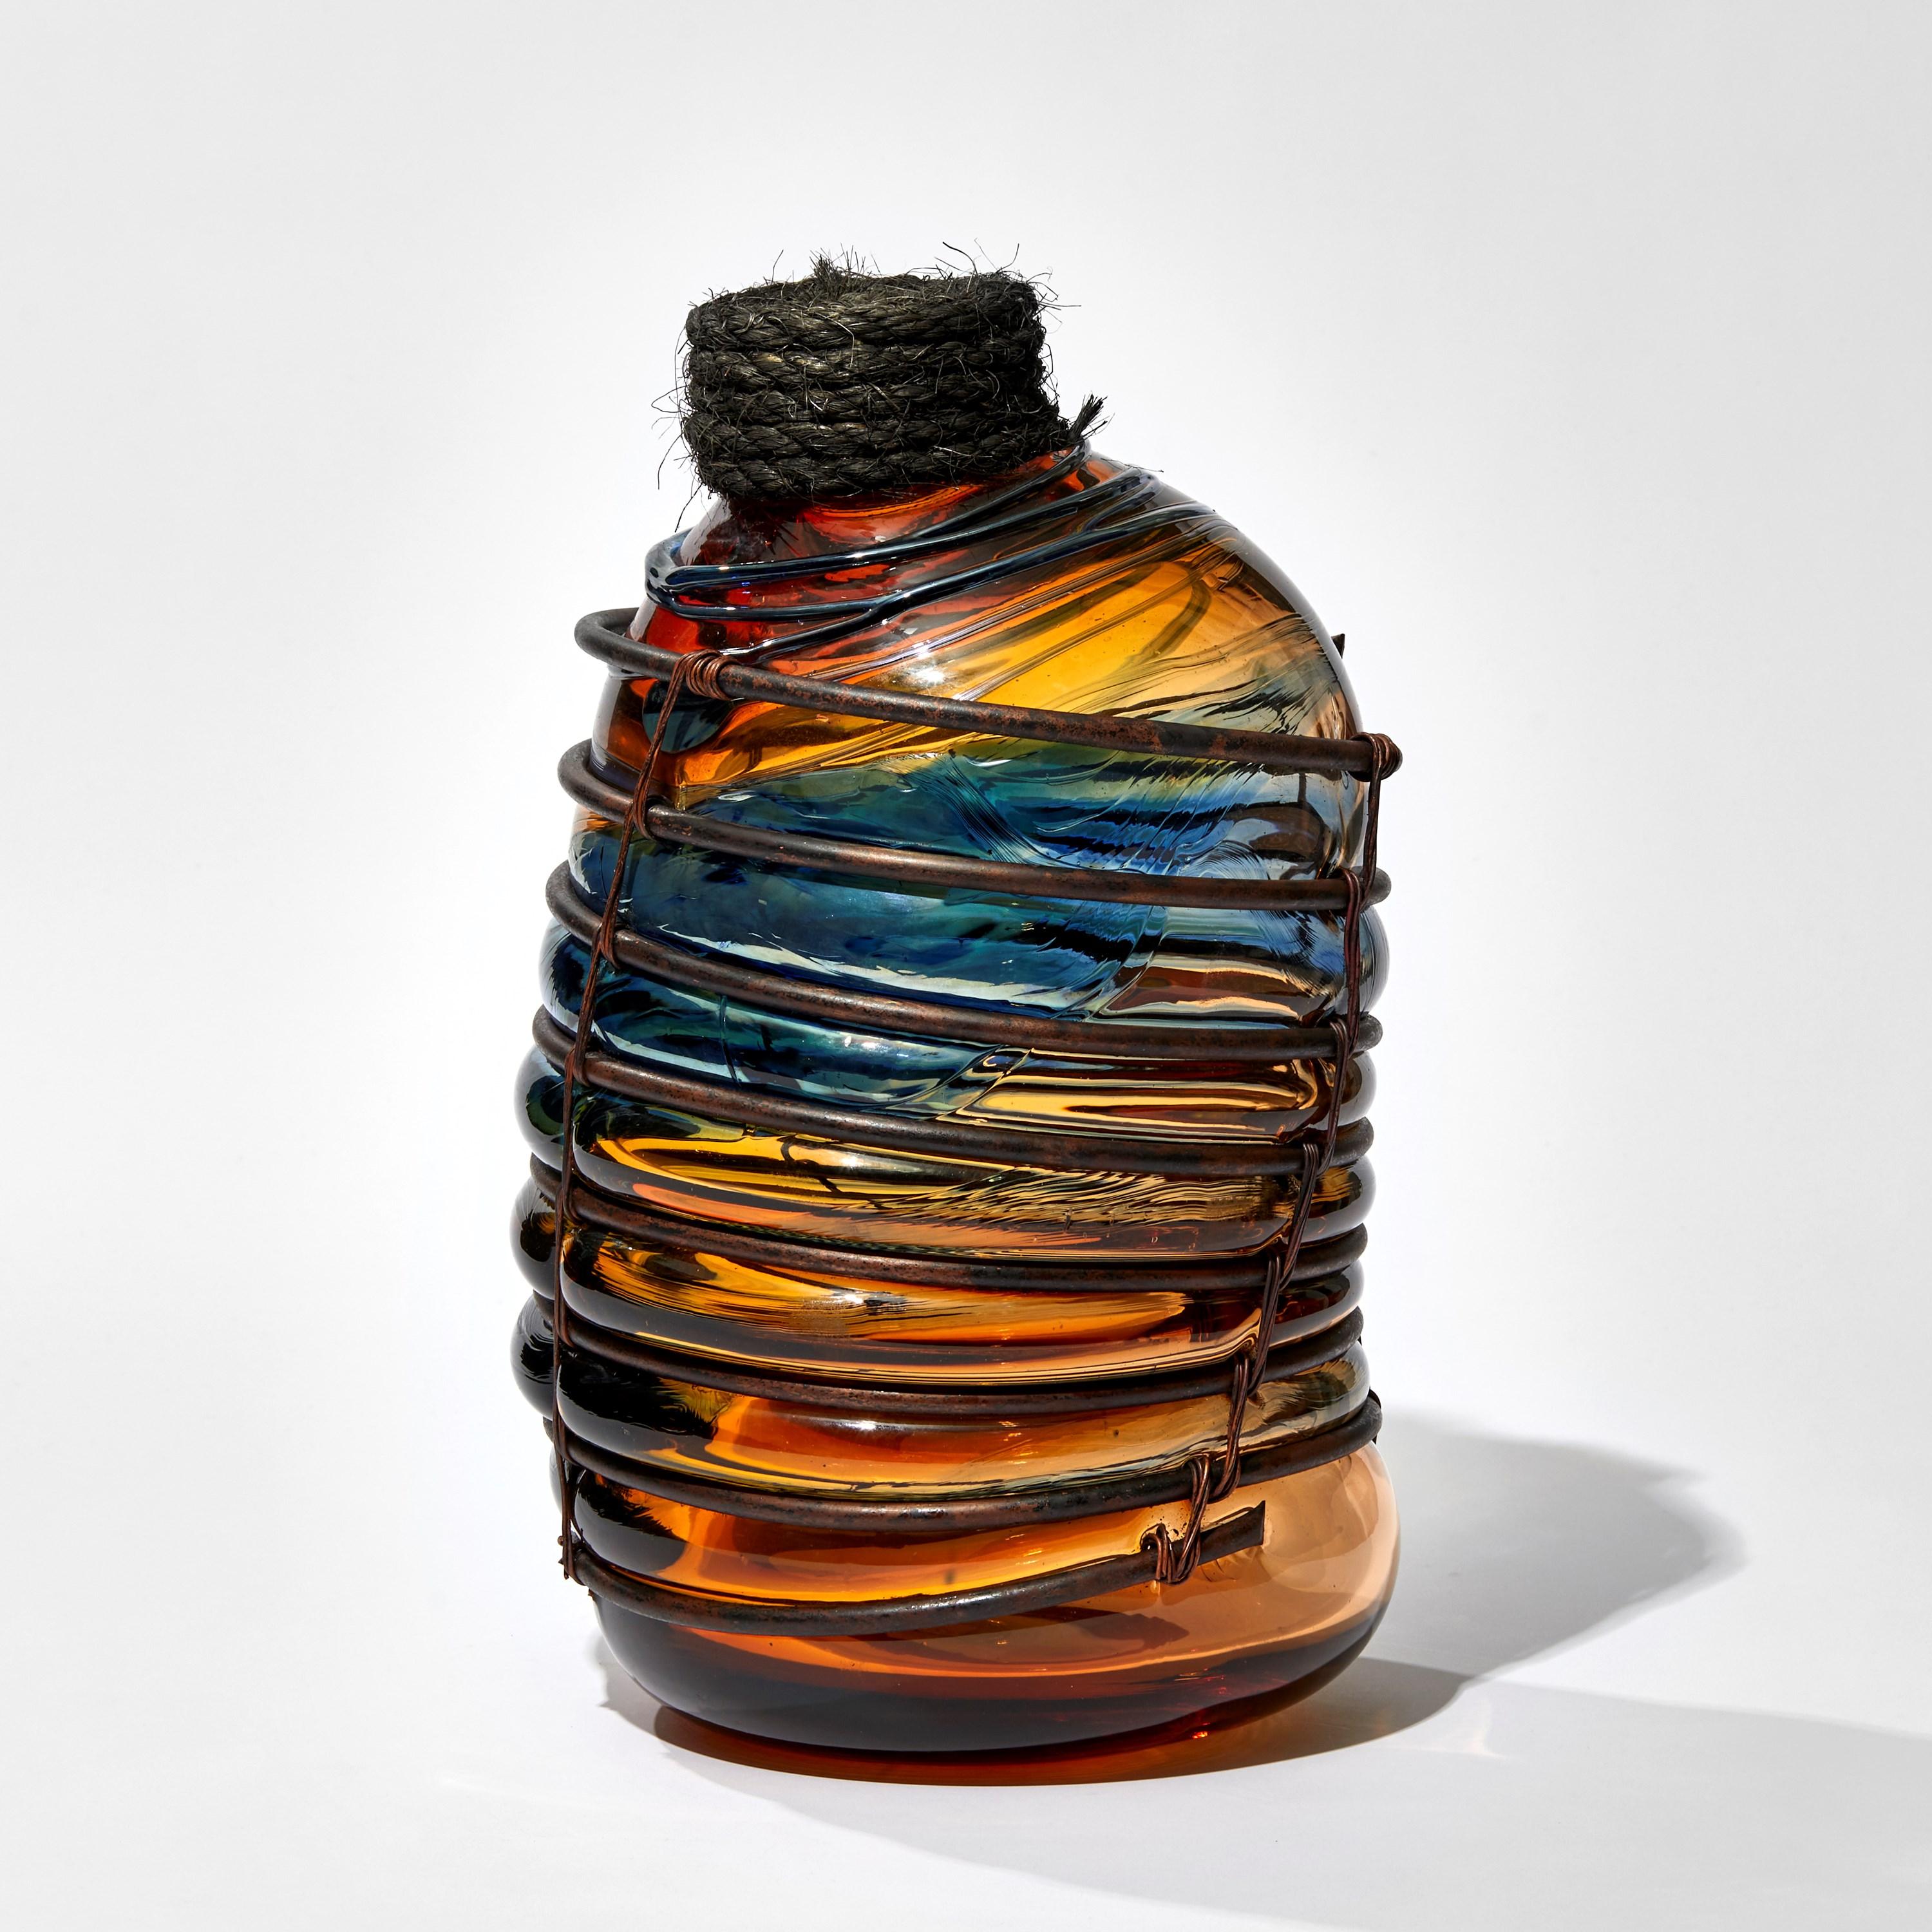 Under the Influence V ist eine einzigartige Skulptur des britischen Künstlers Chris Day, die aus mundgeblasenem und geformtem Glas mit mikrogebohrten Kupferrohren, Kupferdraht und Seil geschaffen wurde.

Über 